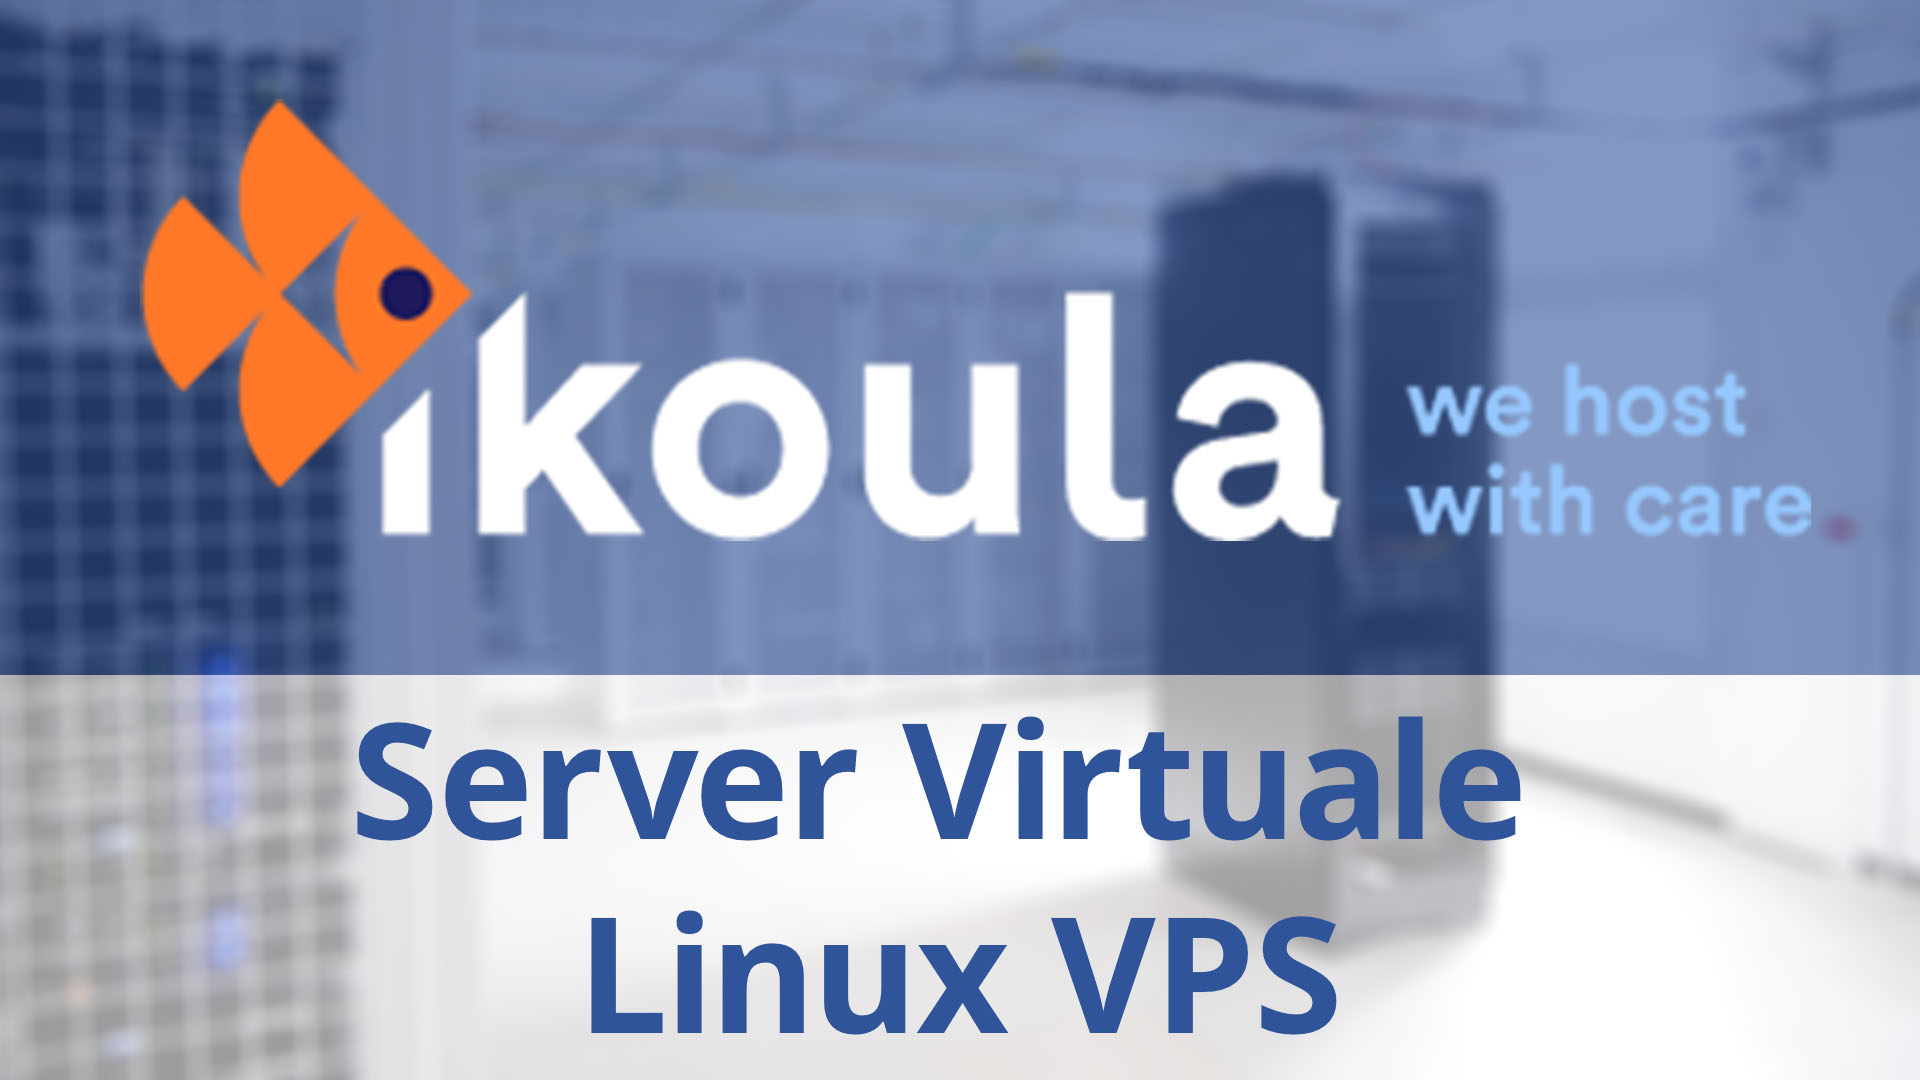 IKOULA-Server-Virtuale-Linux-VPS